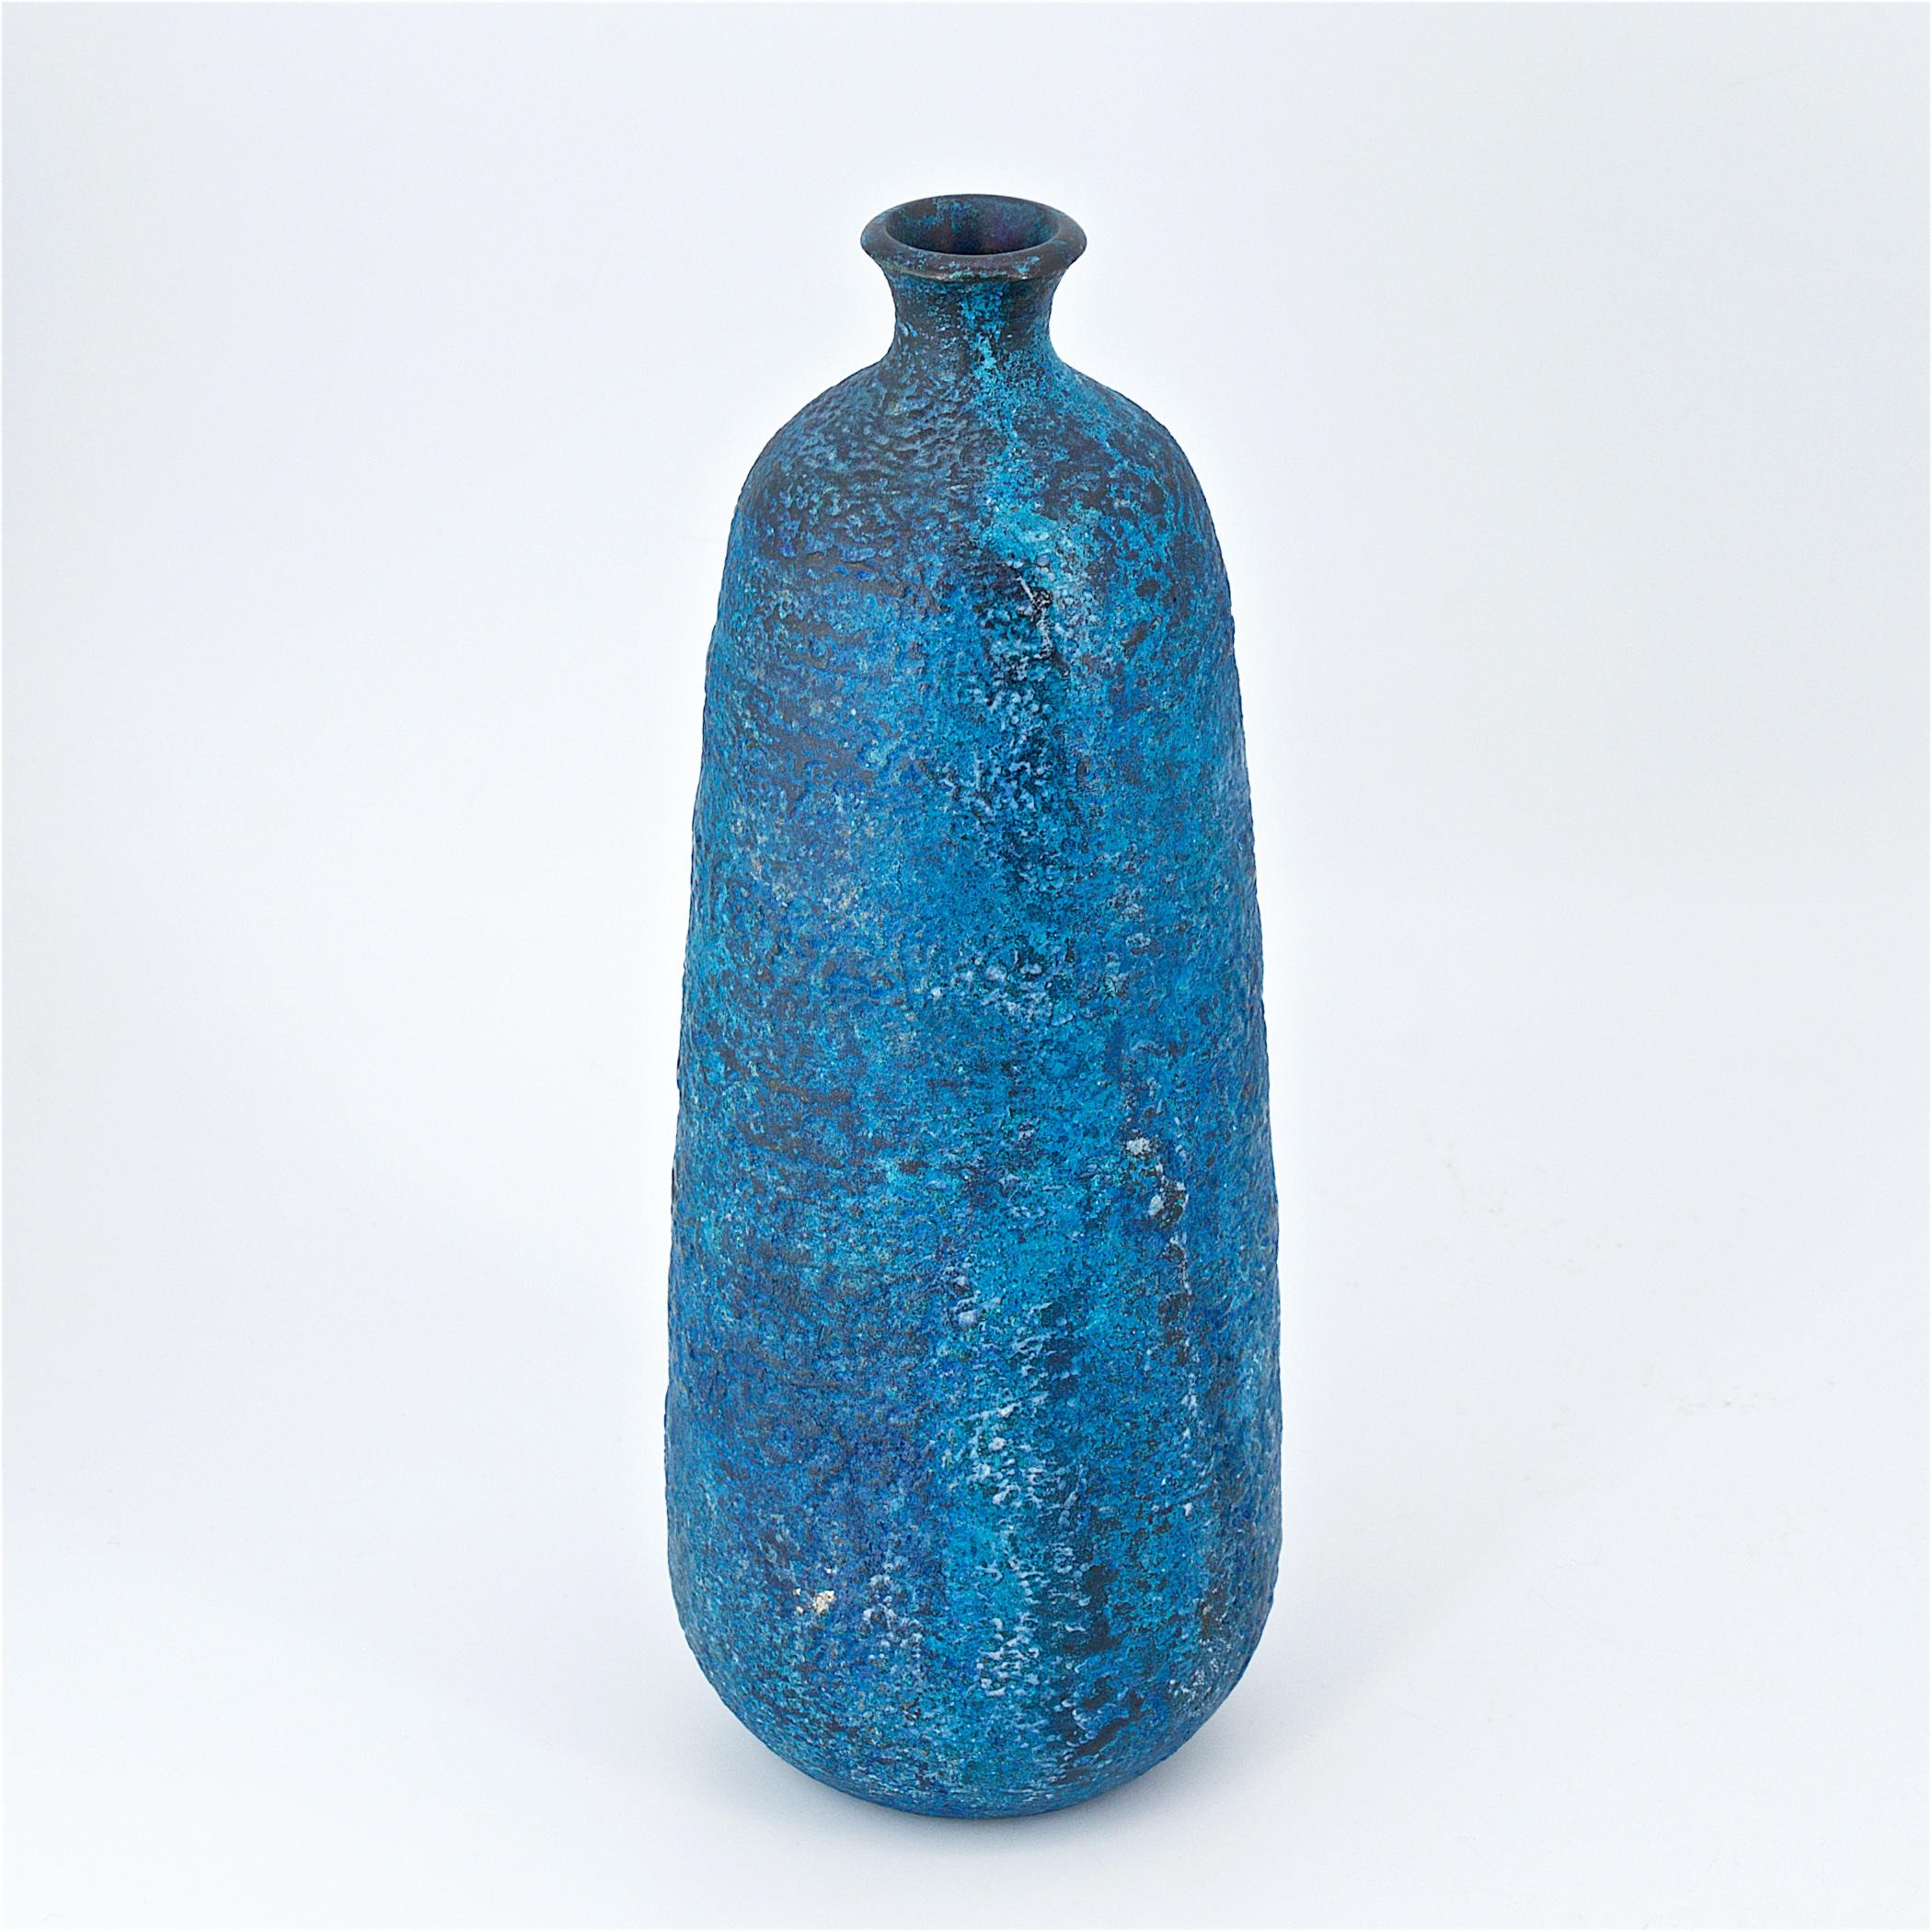 Spektakuläre japanische Vase. So etwas haben wir noch nie erlebt! Super unauffällig, aber mit einer leuchtend blauen Glasur! Gesprenkeltes oder vulkanisches Strukturemail über Bronze. Die Glasur besteht aus: Königsblau, Kobaltblau, Türkis, Schwarz